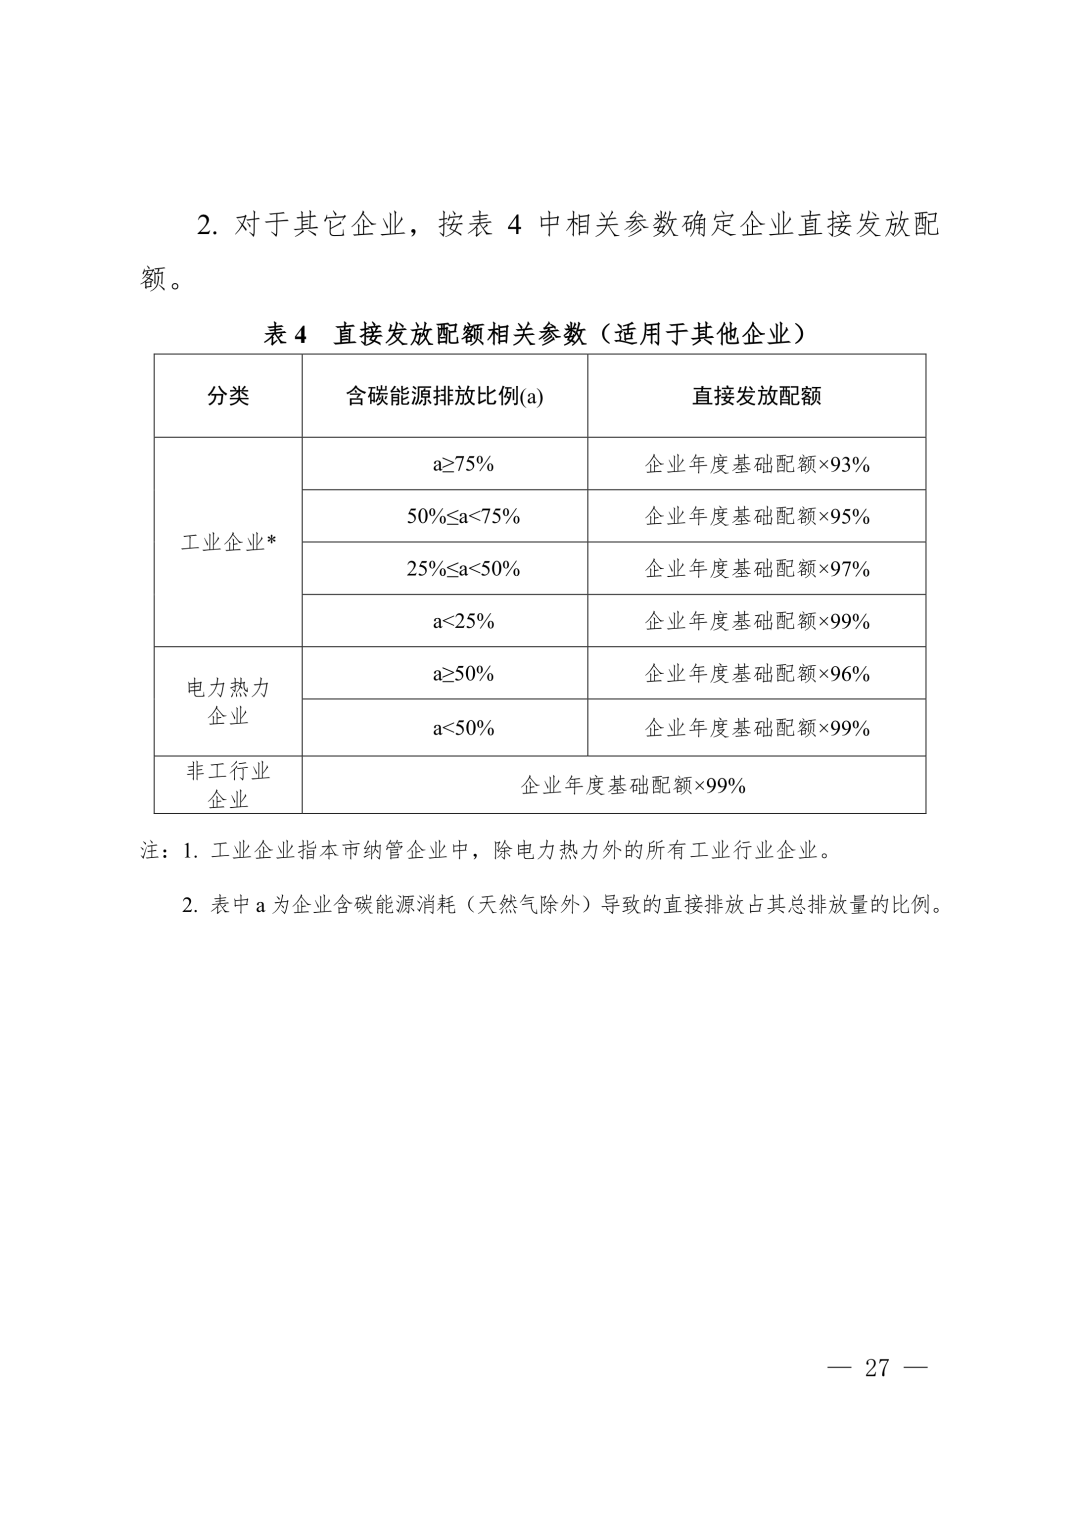 【关注】上海市生态环境局关于印发《上海市纳入碳排放配额管理单位名单（2019版）》及《上海市2019年碳排放配额分配方案》的通知(图27)